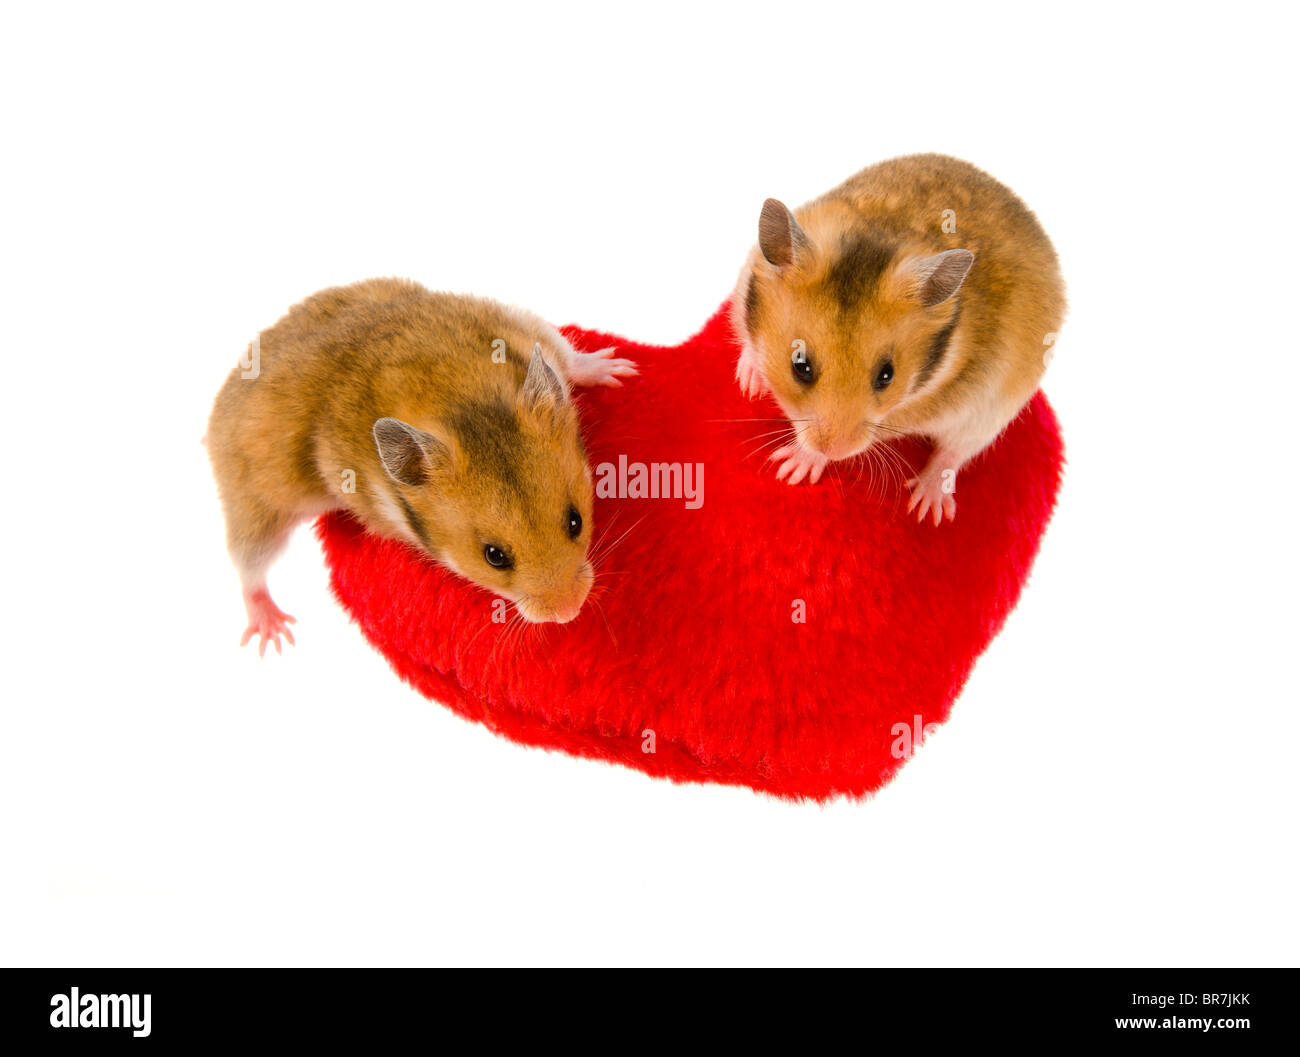 2 zwei junge Hamster Goldhamster auf rotes Herz Ausschnitt Säugling Mesocricetus Auratus farbige Sit sitzen aufrecht Stand stehende l Stockfoto